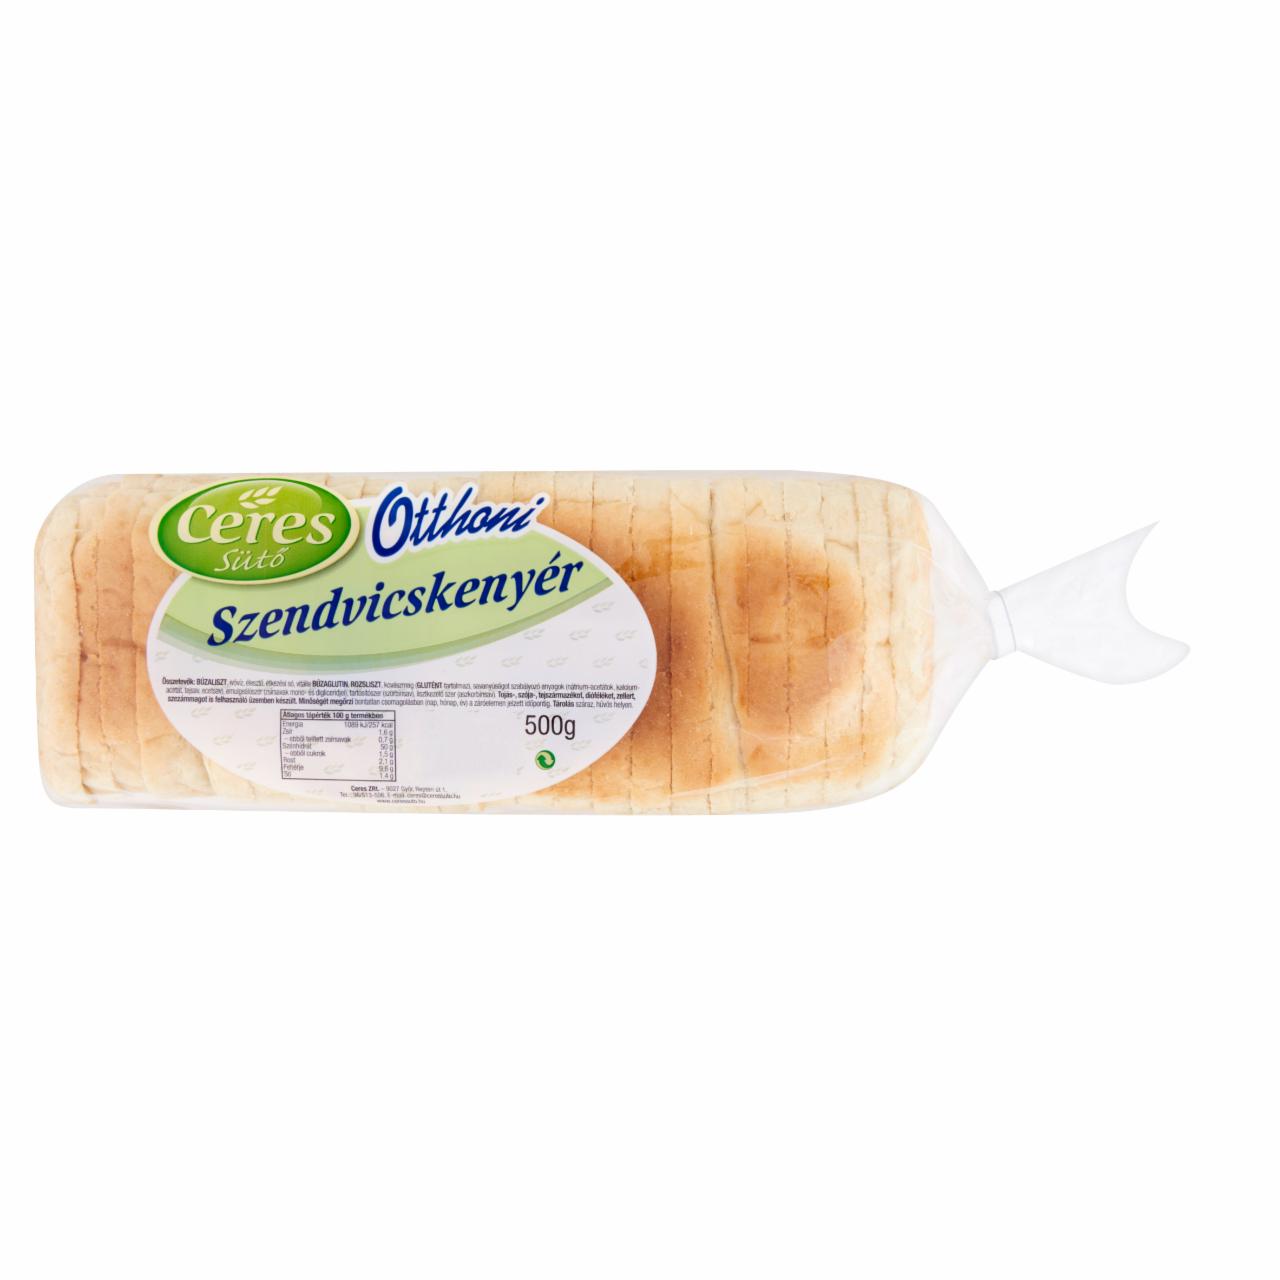 Képek - Ceres Sütő Otthoni szendvicskenyér 500 g